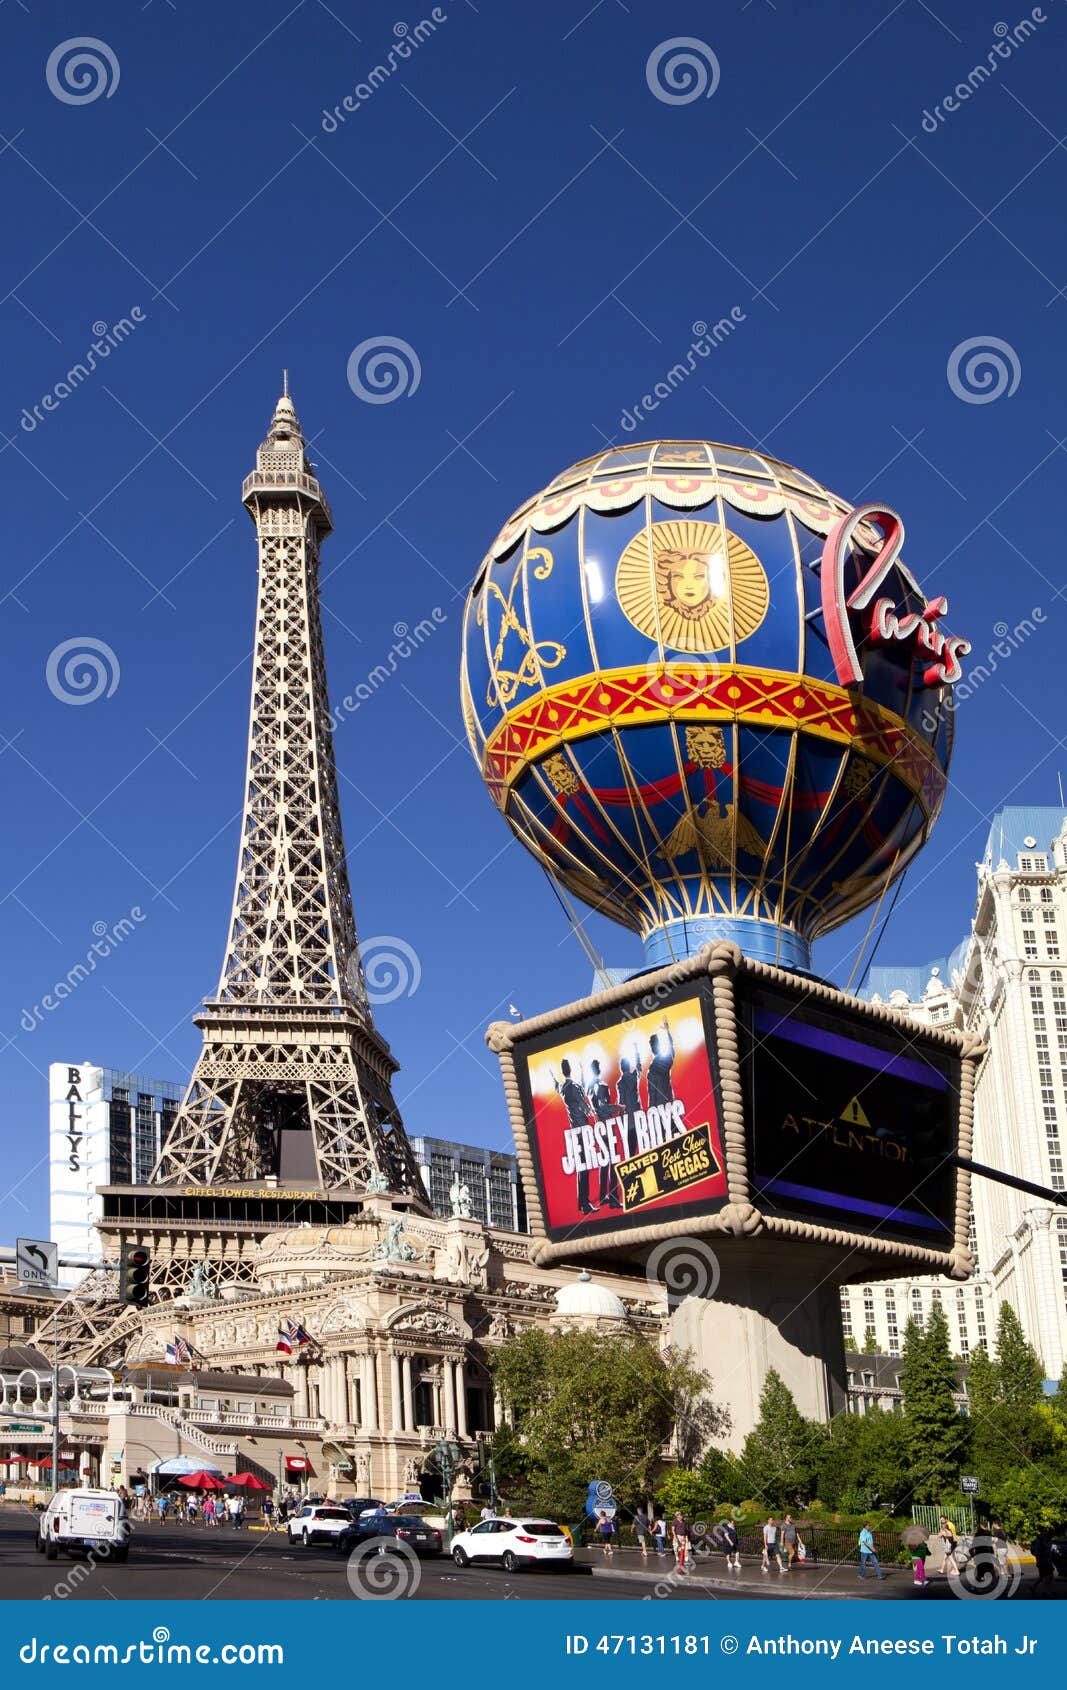 Paris Hotel and Casino in Las Vegas, Nevada Editorial Photo - Image of ...